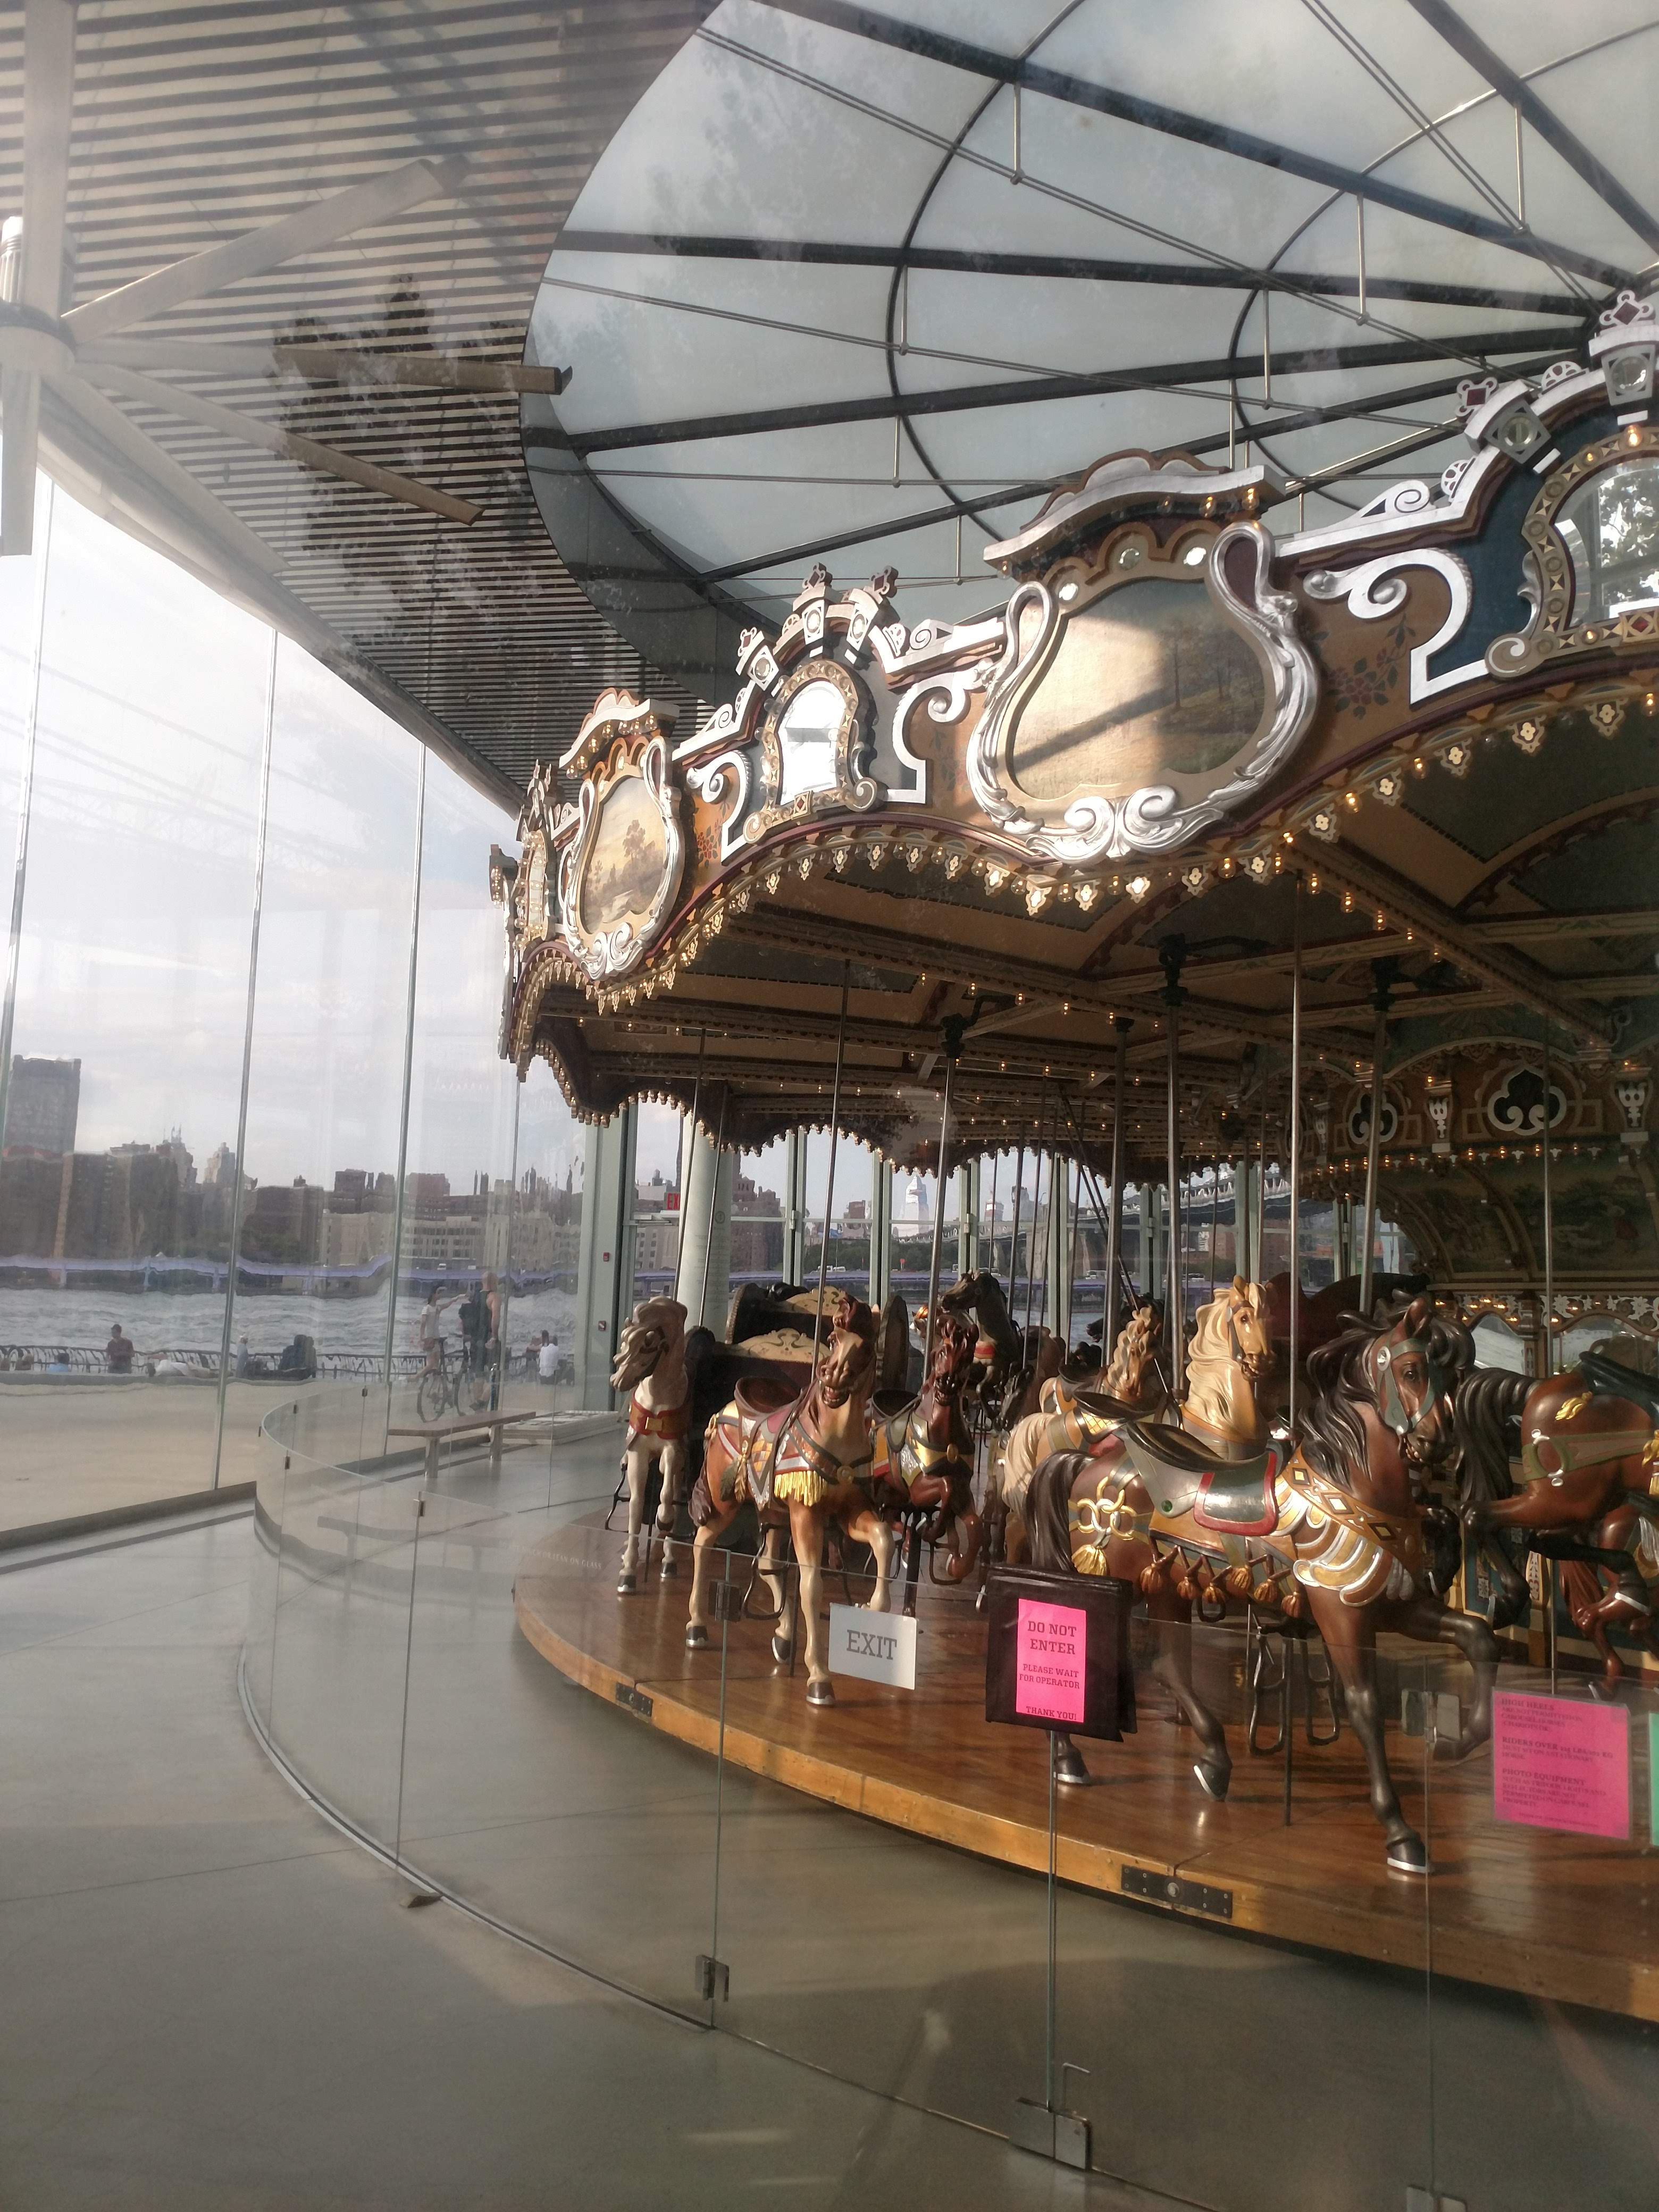 Battery Park Carousel